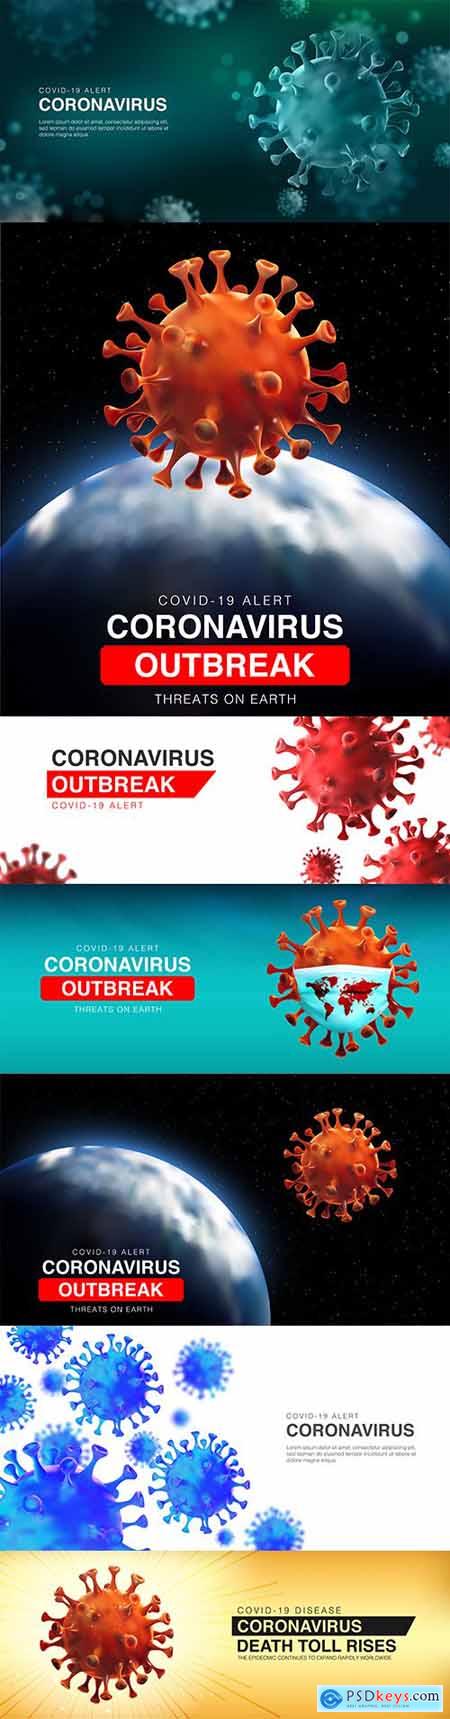 Threats coronavirus outbreak on ground 3d illustration